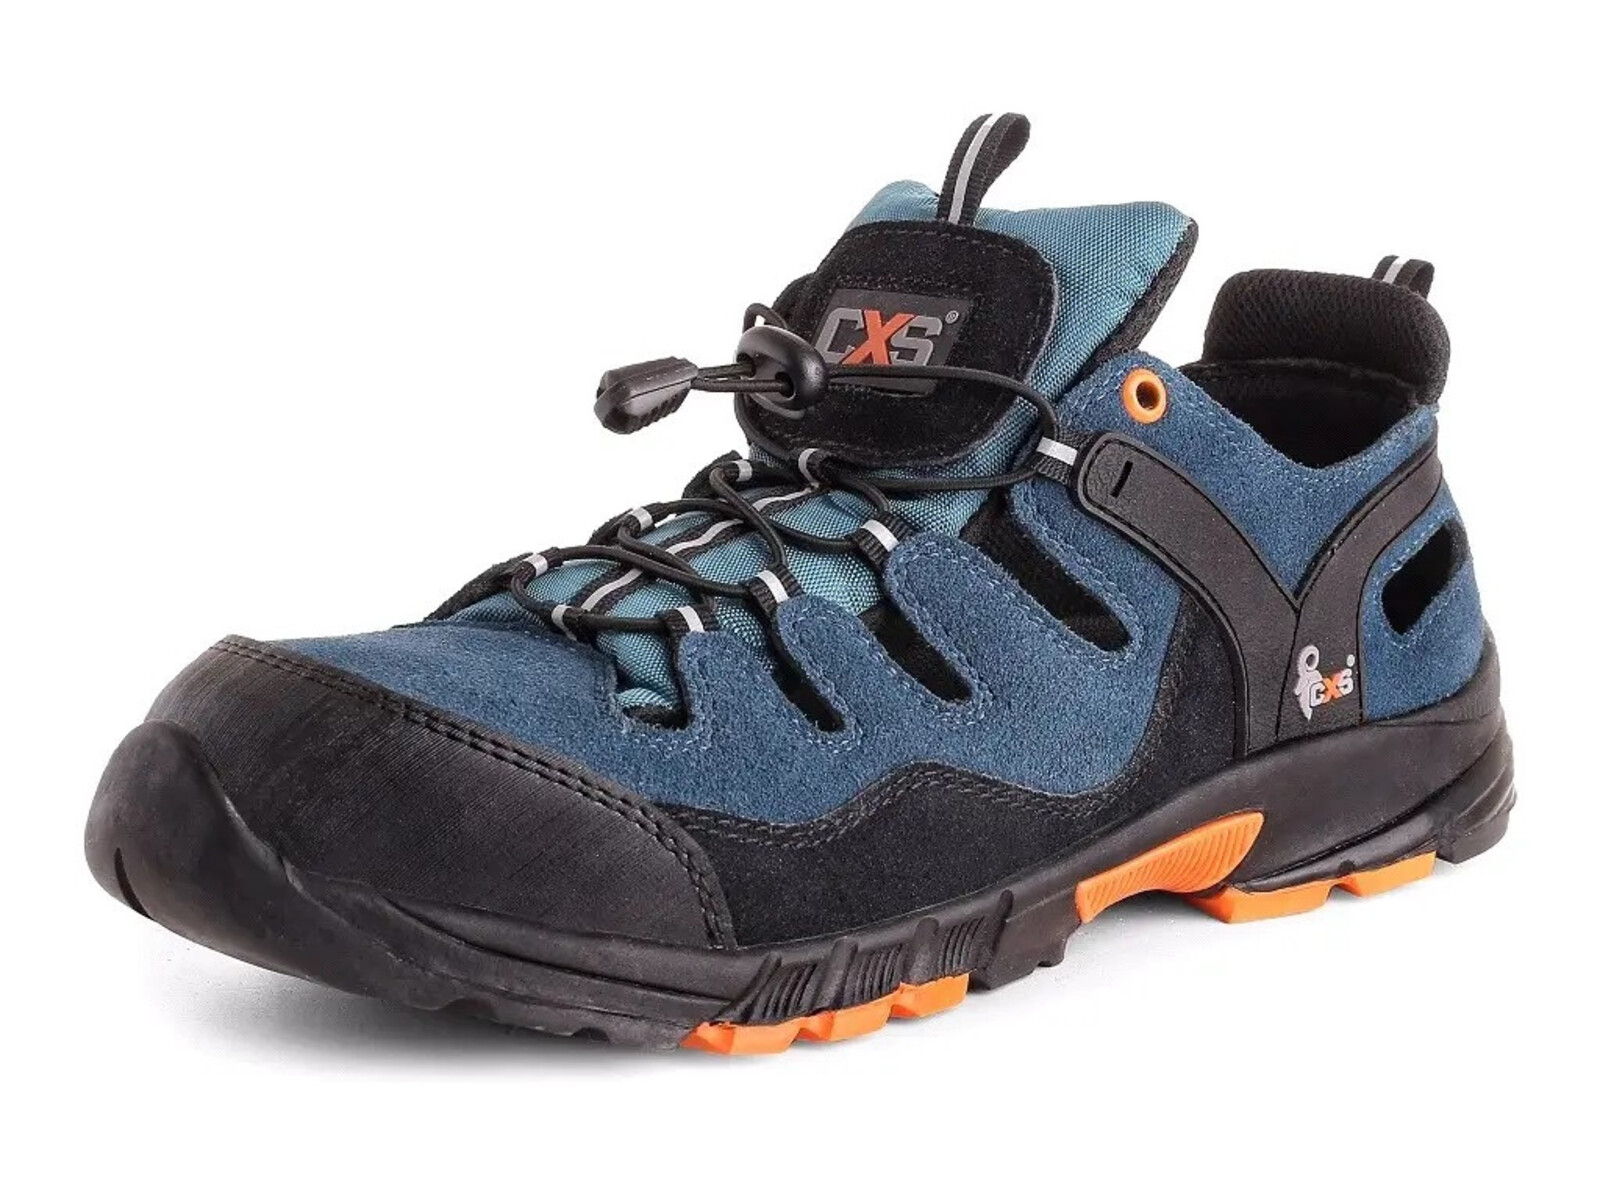 Bezpečnostné sandále CXS Land Cabrera S1 SRC - veľkosť: 46, farba: modrá/oranžová